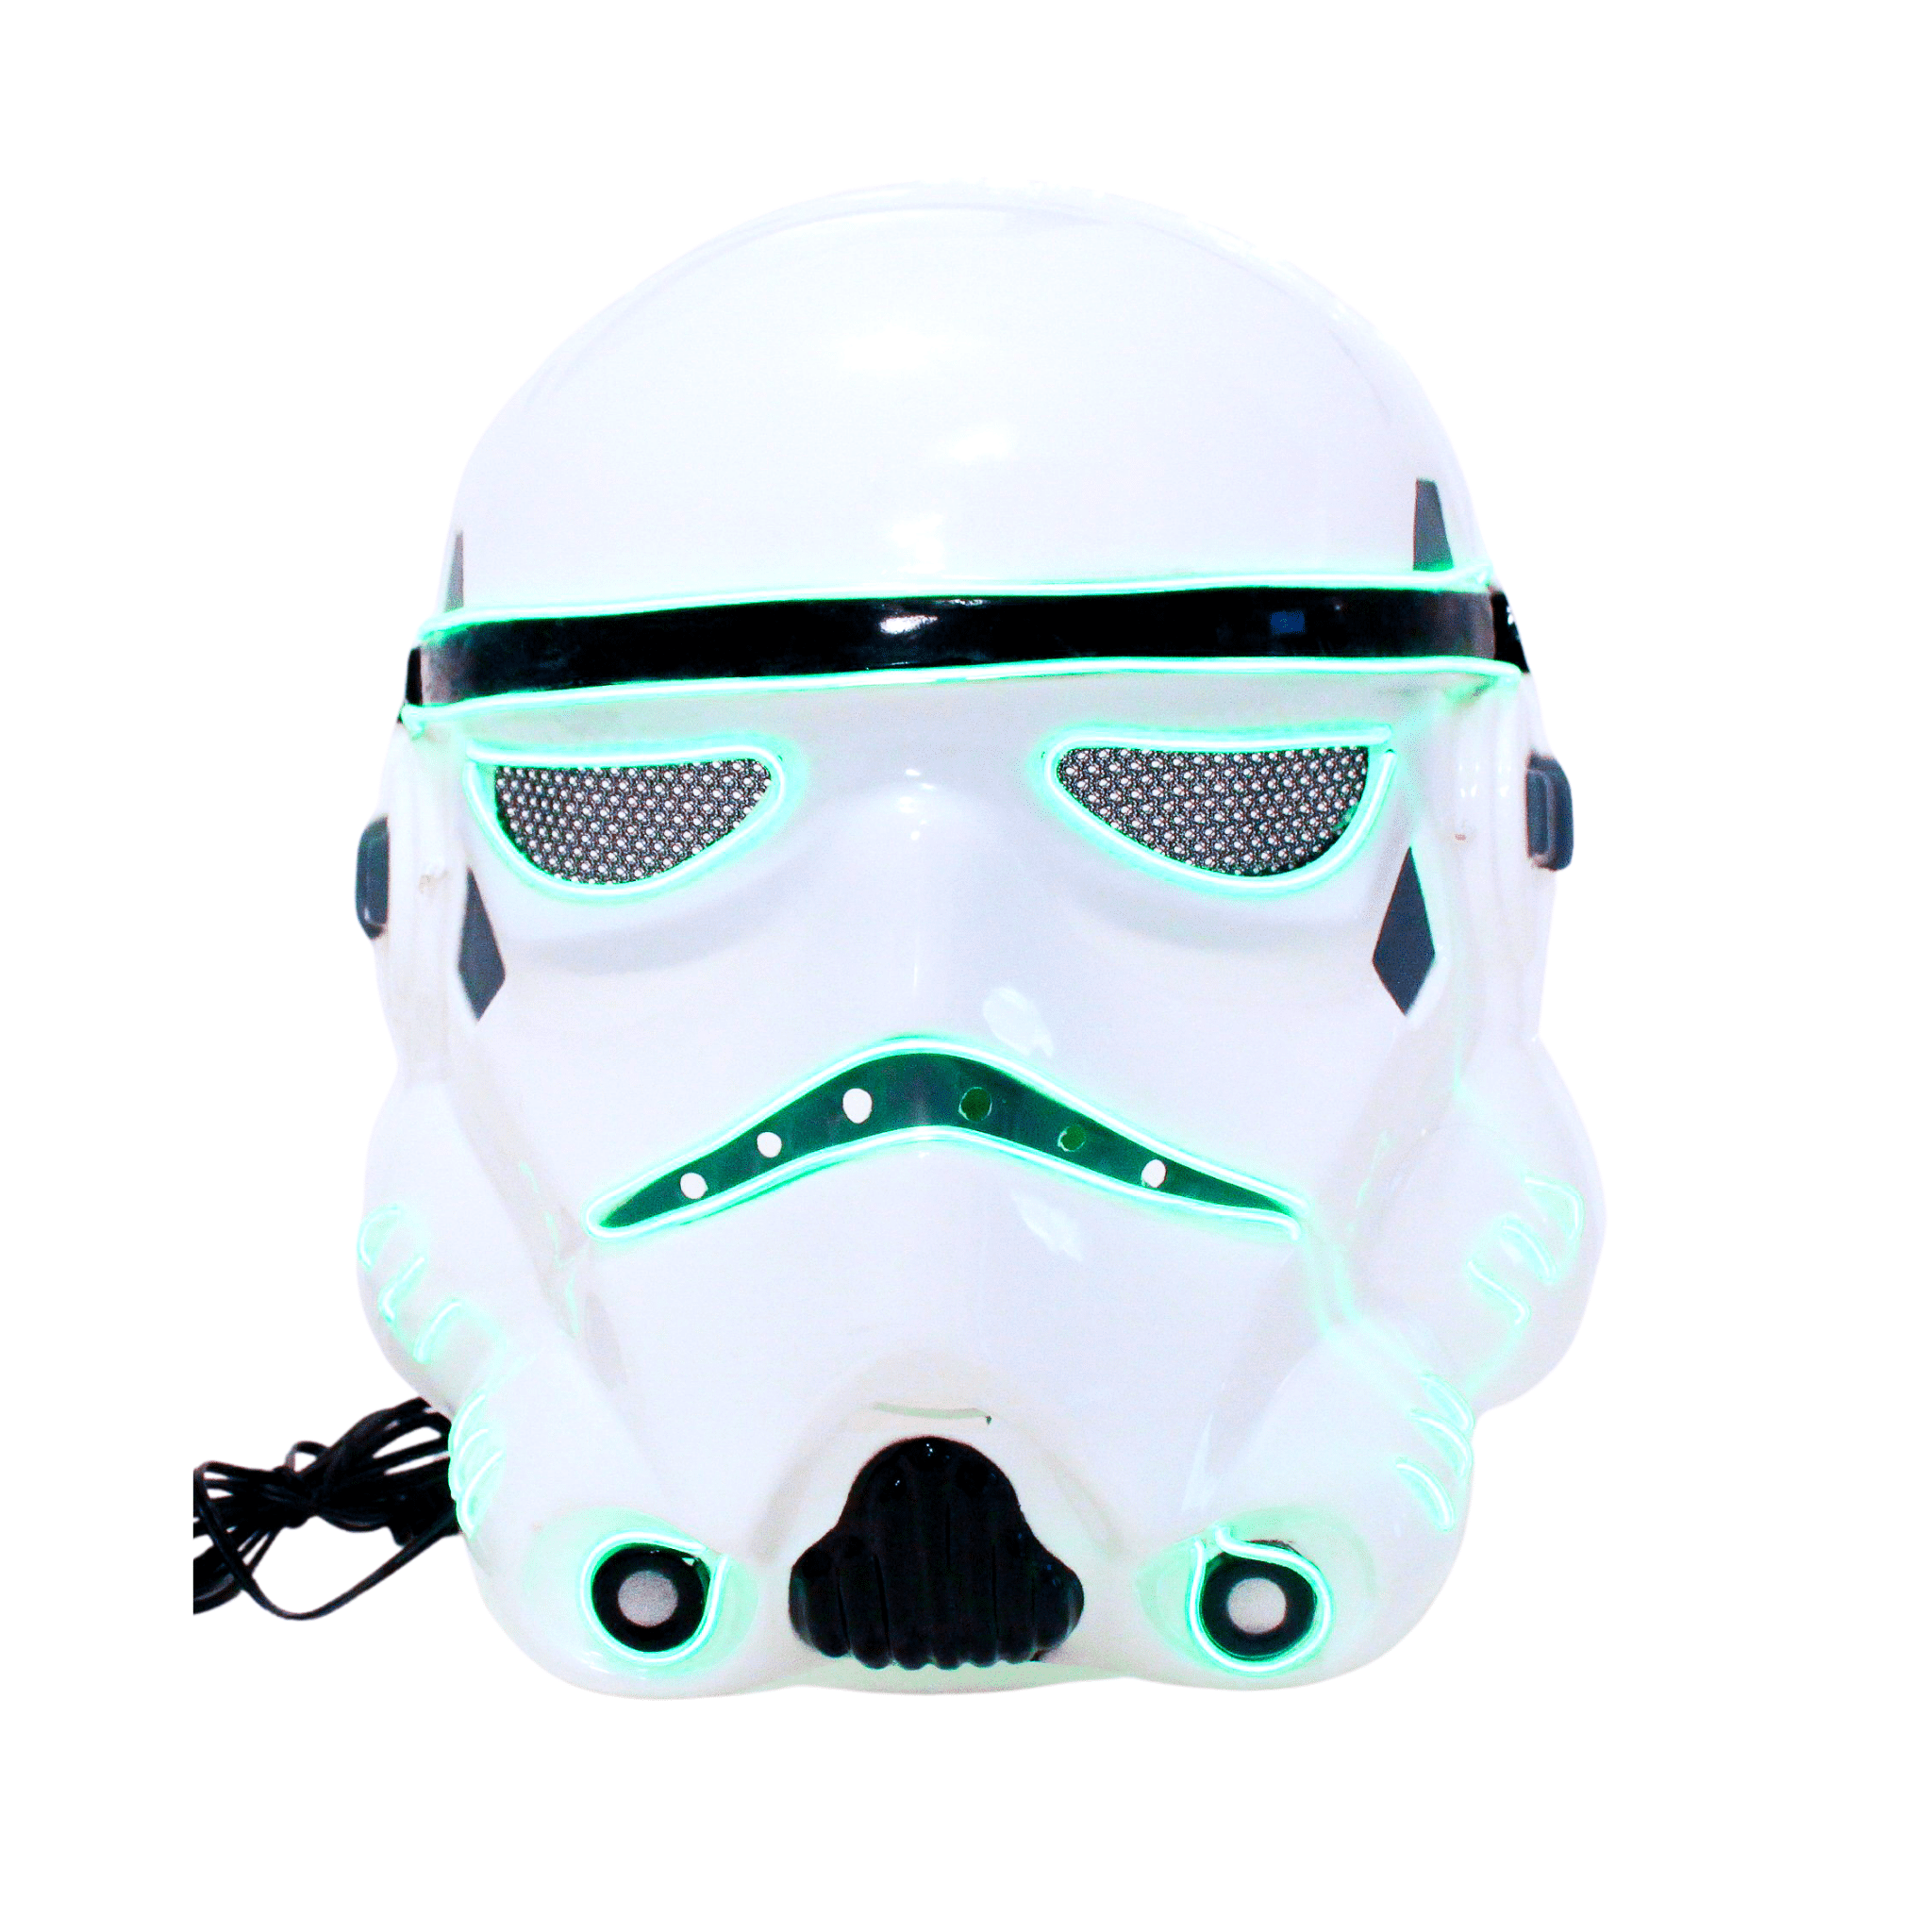 Star Wars Mask Stormtrooper Darth Vader Light Up Kids Mask Costume Party 